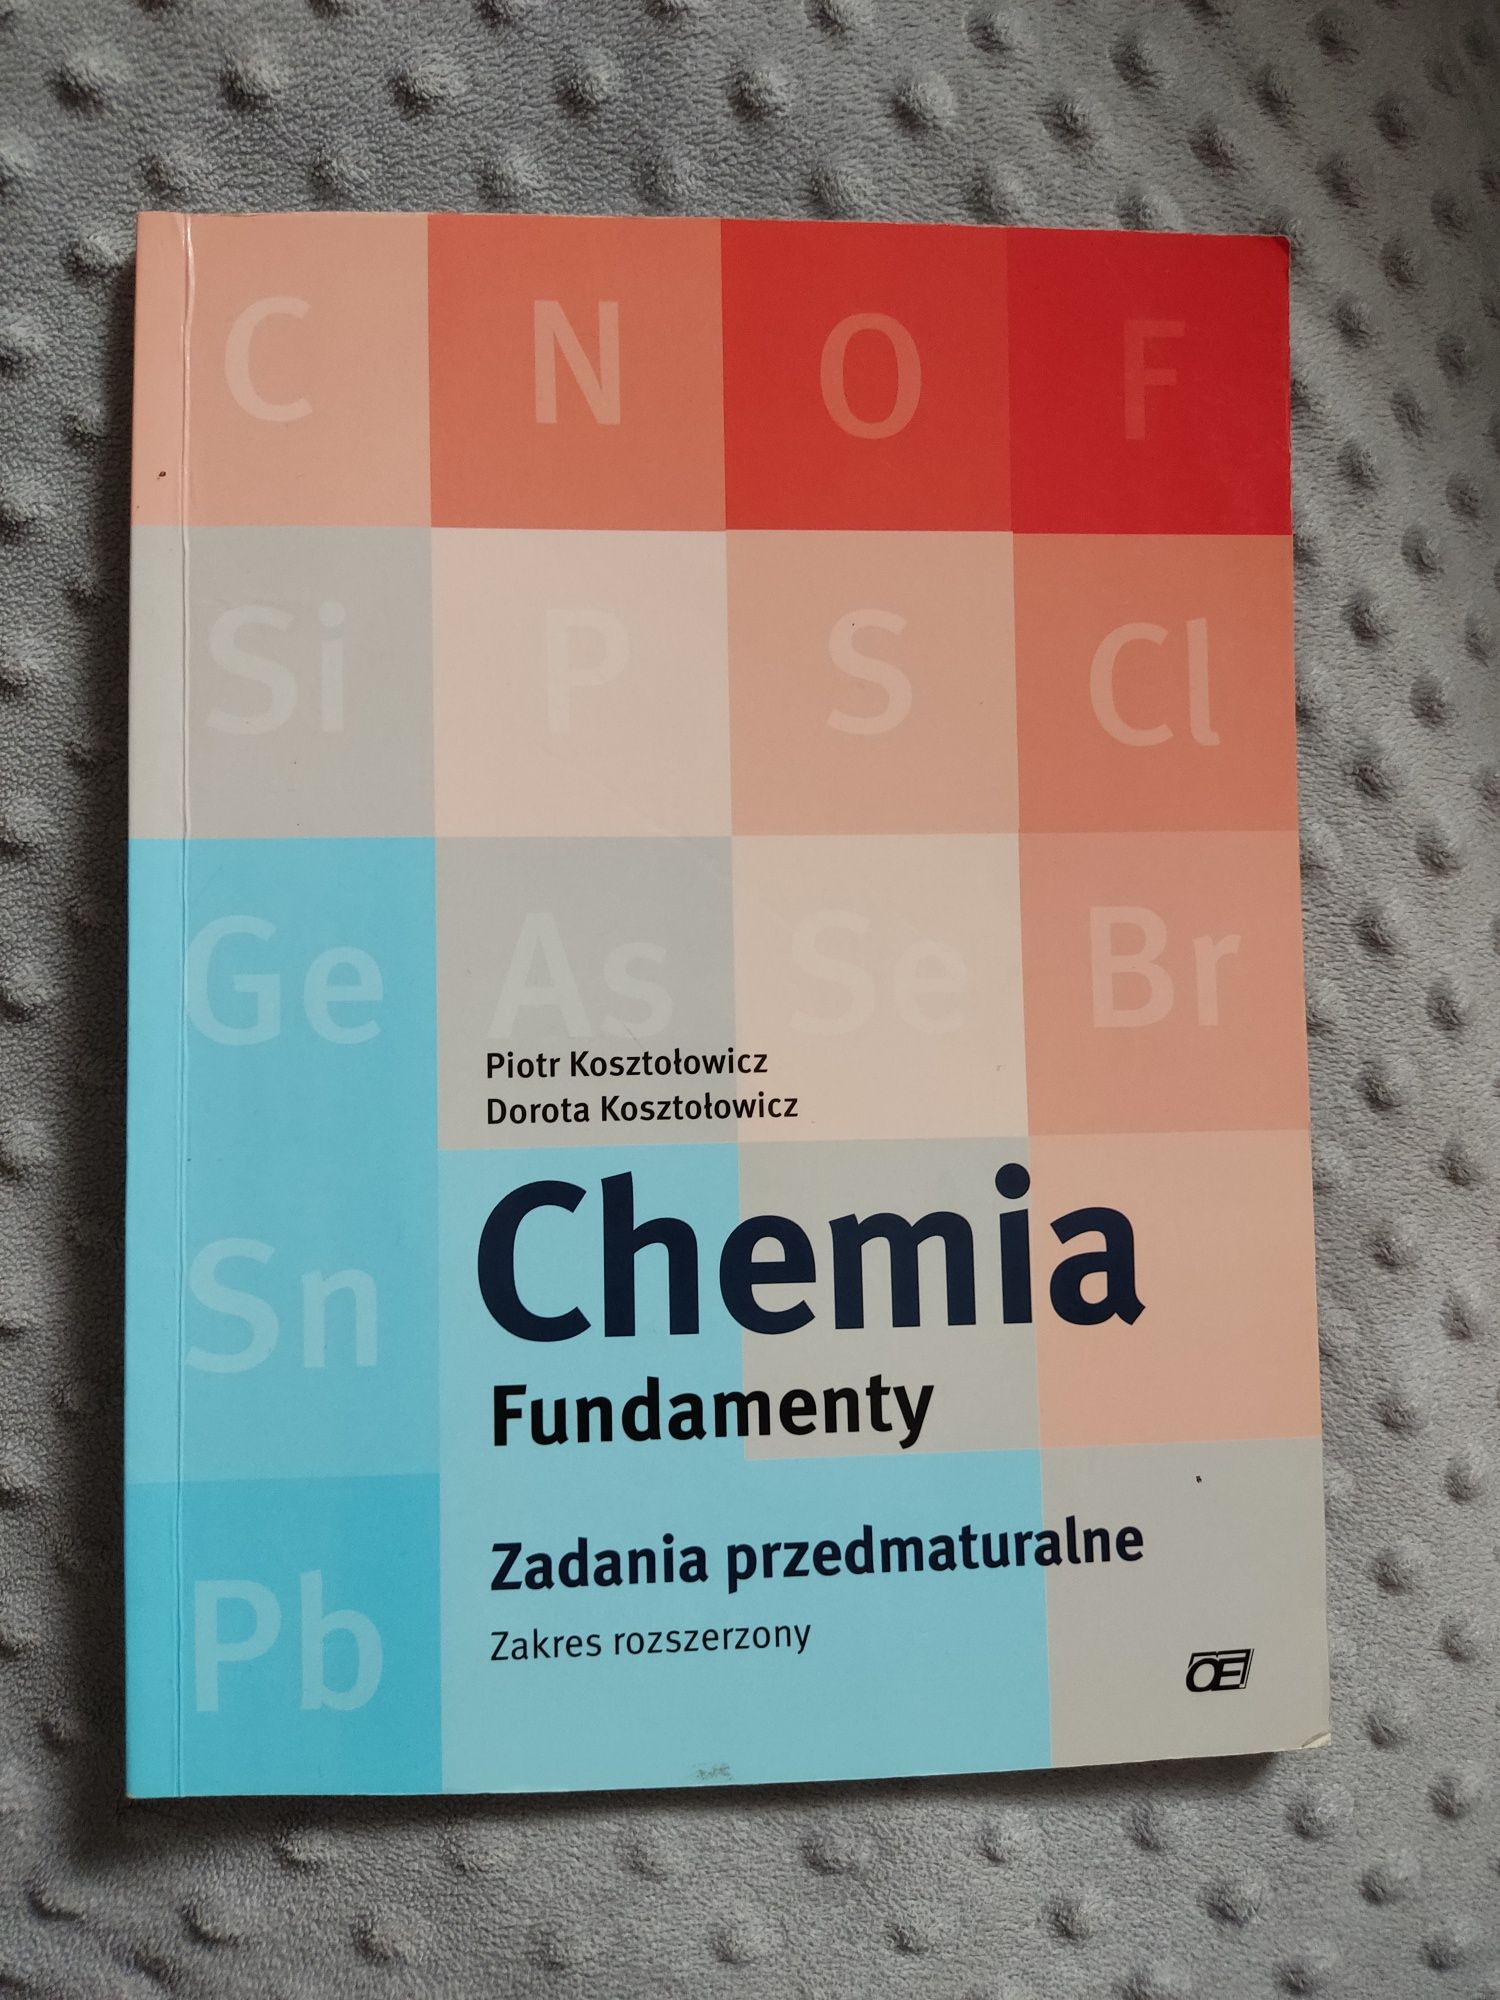 Zadania przedmaturalne chemia, zakres rozszerzony, Kosztołowicz.